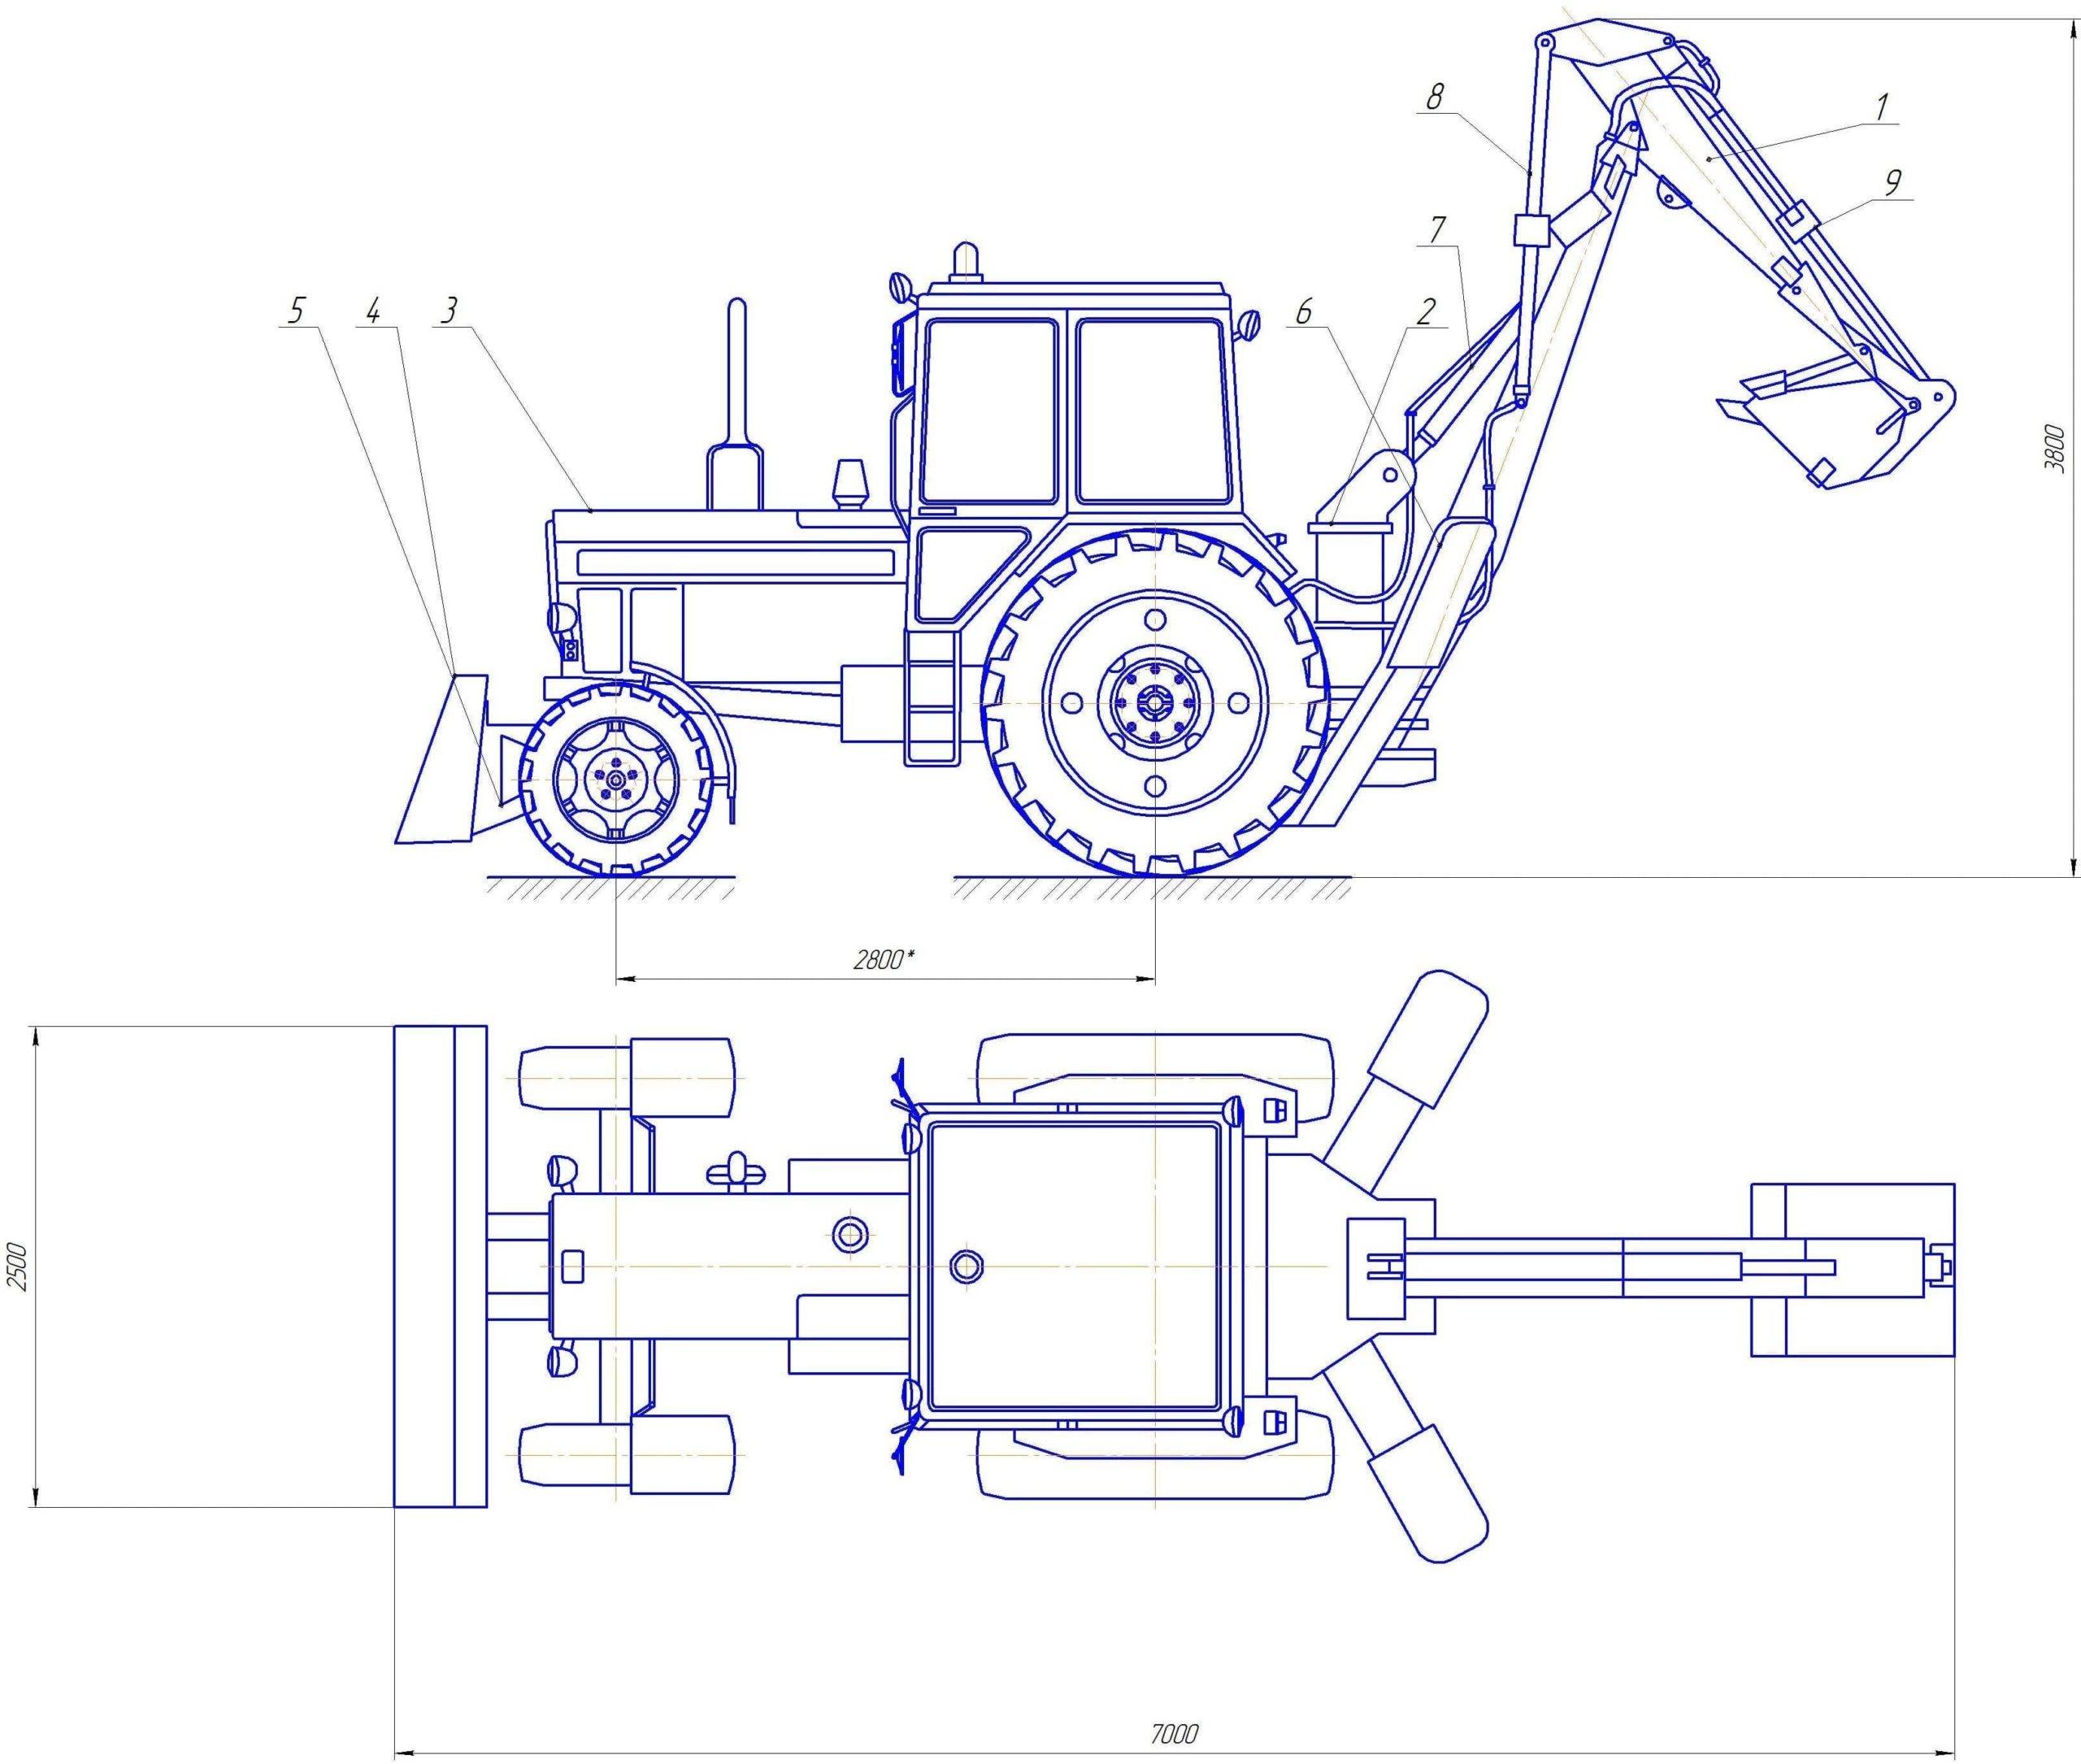 Устройство трактора мтз-82 – детально о конструкции модели